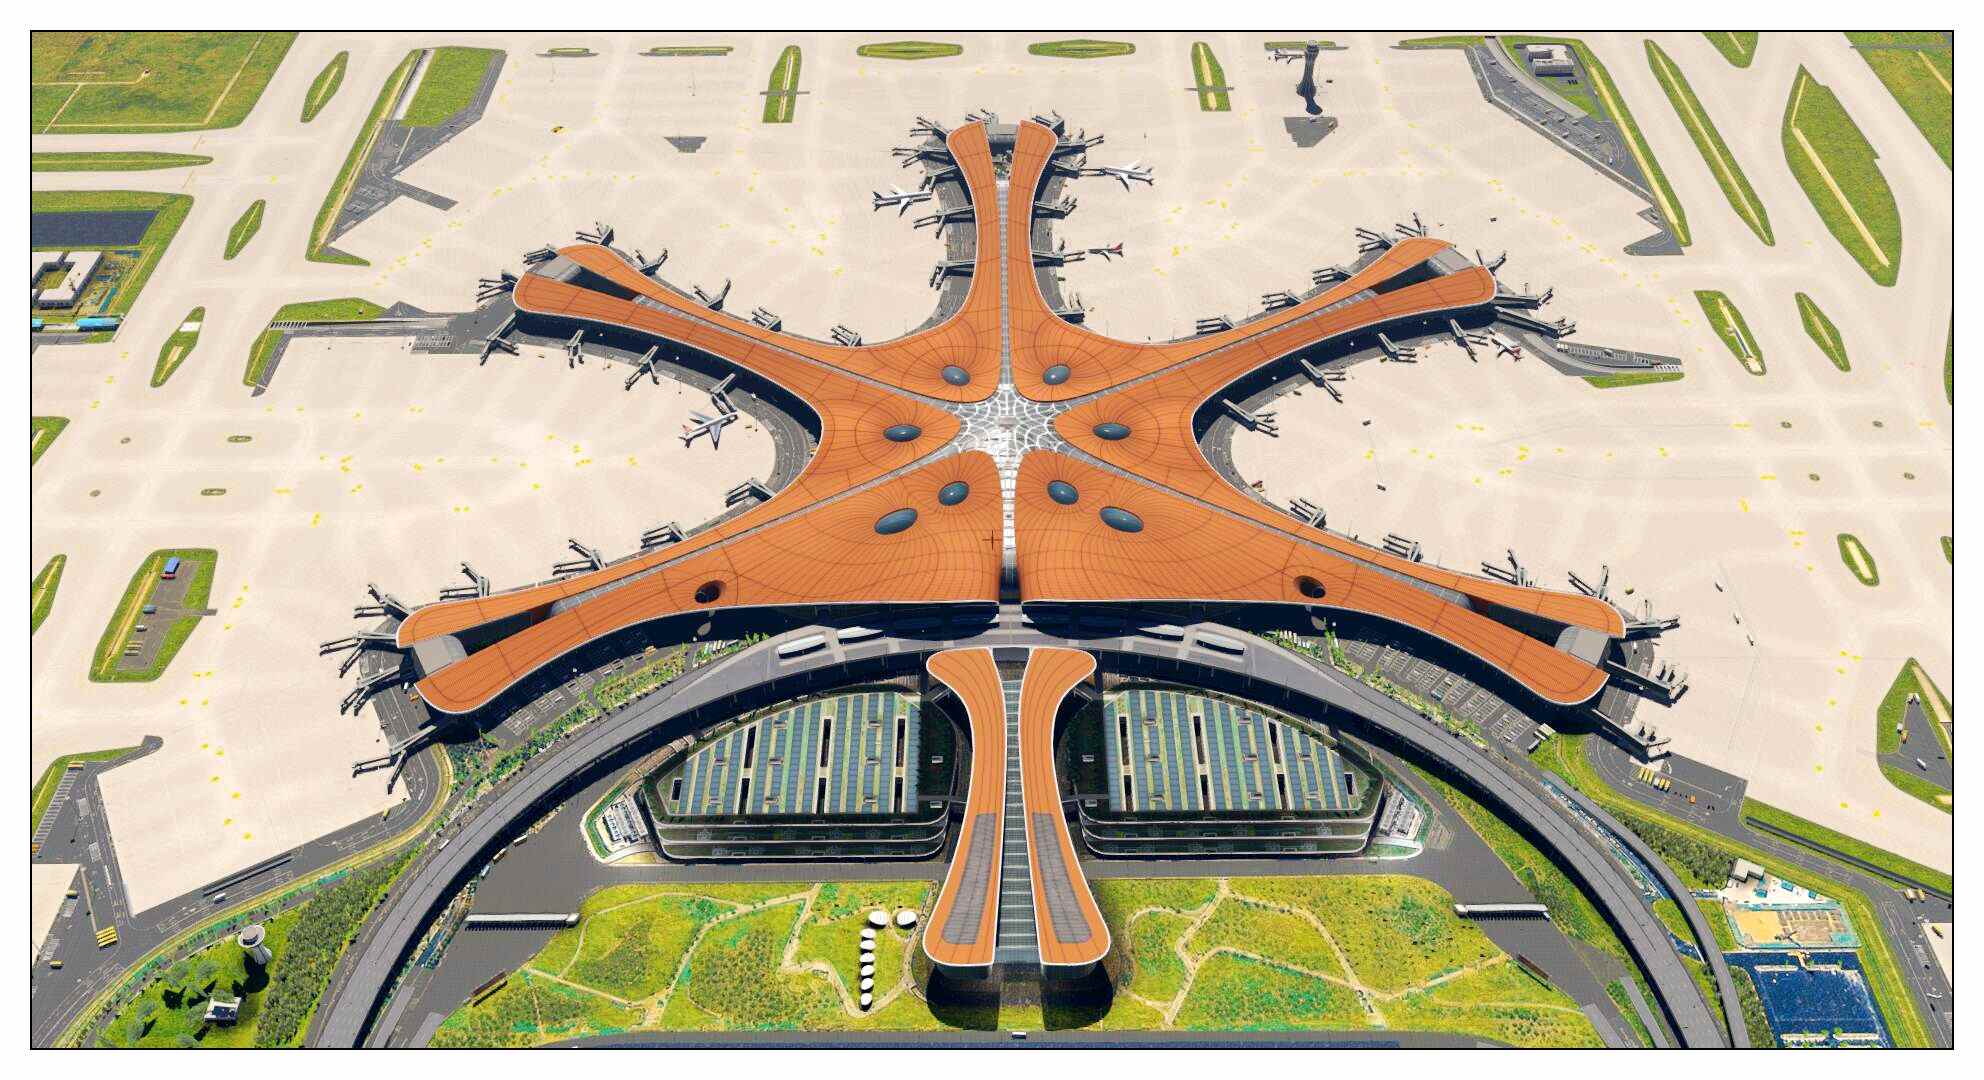 【X-Plane】ZBAD北京大兴国际机场-正式发布-2098 